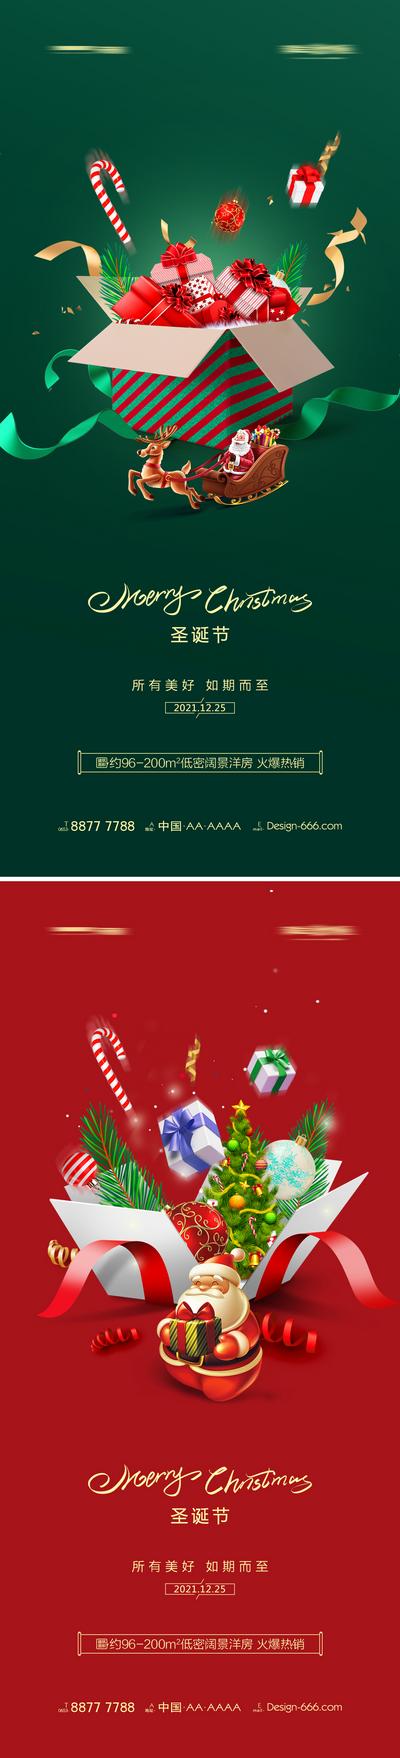 南门网 地产圣诞节礼盒系列海报